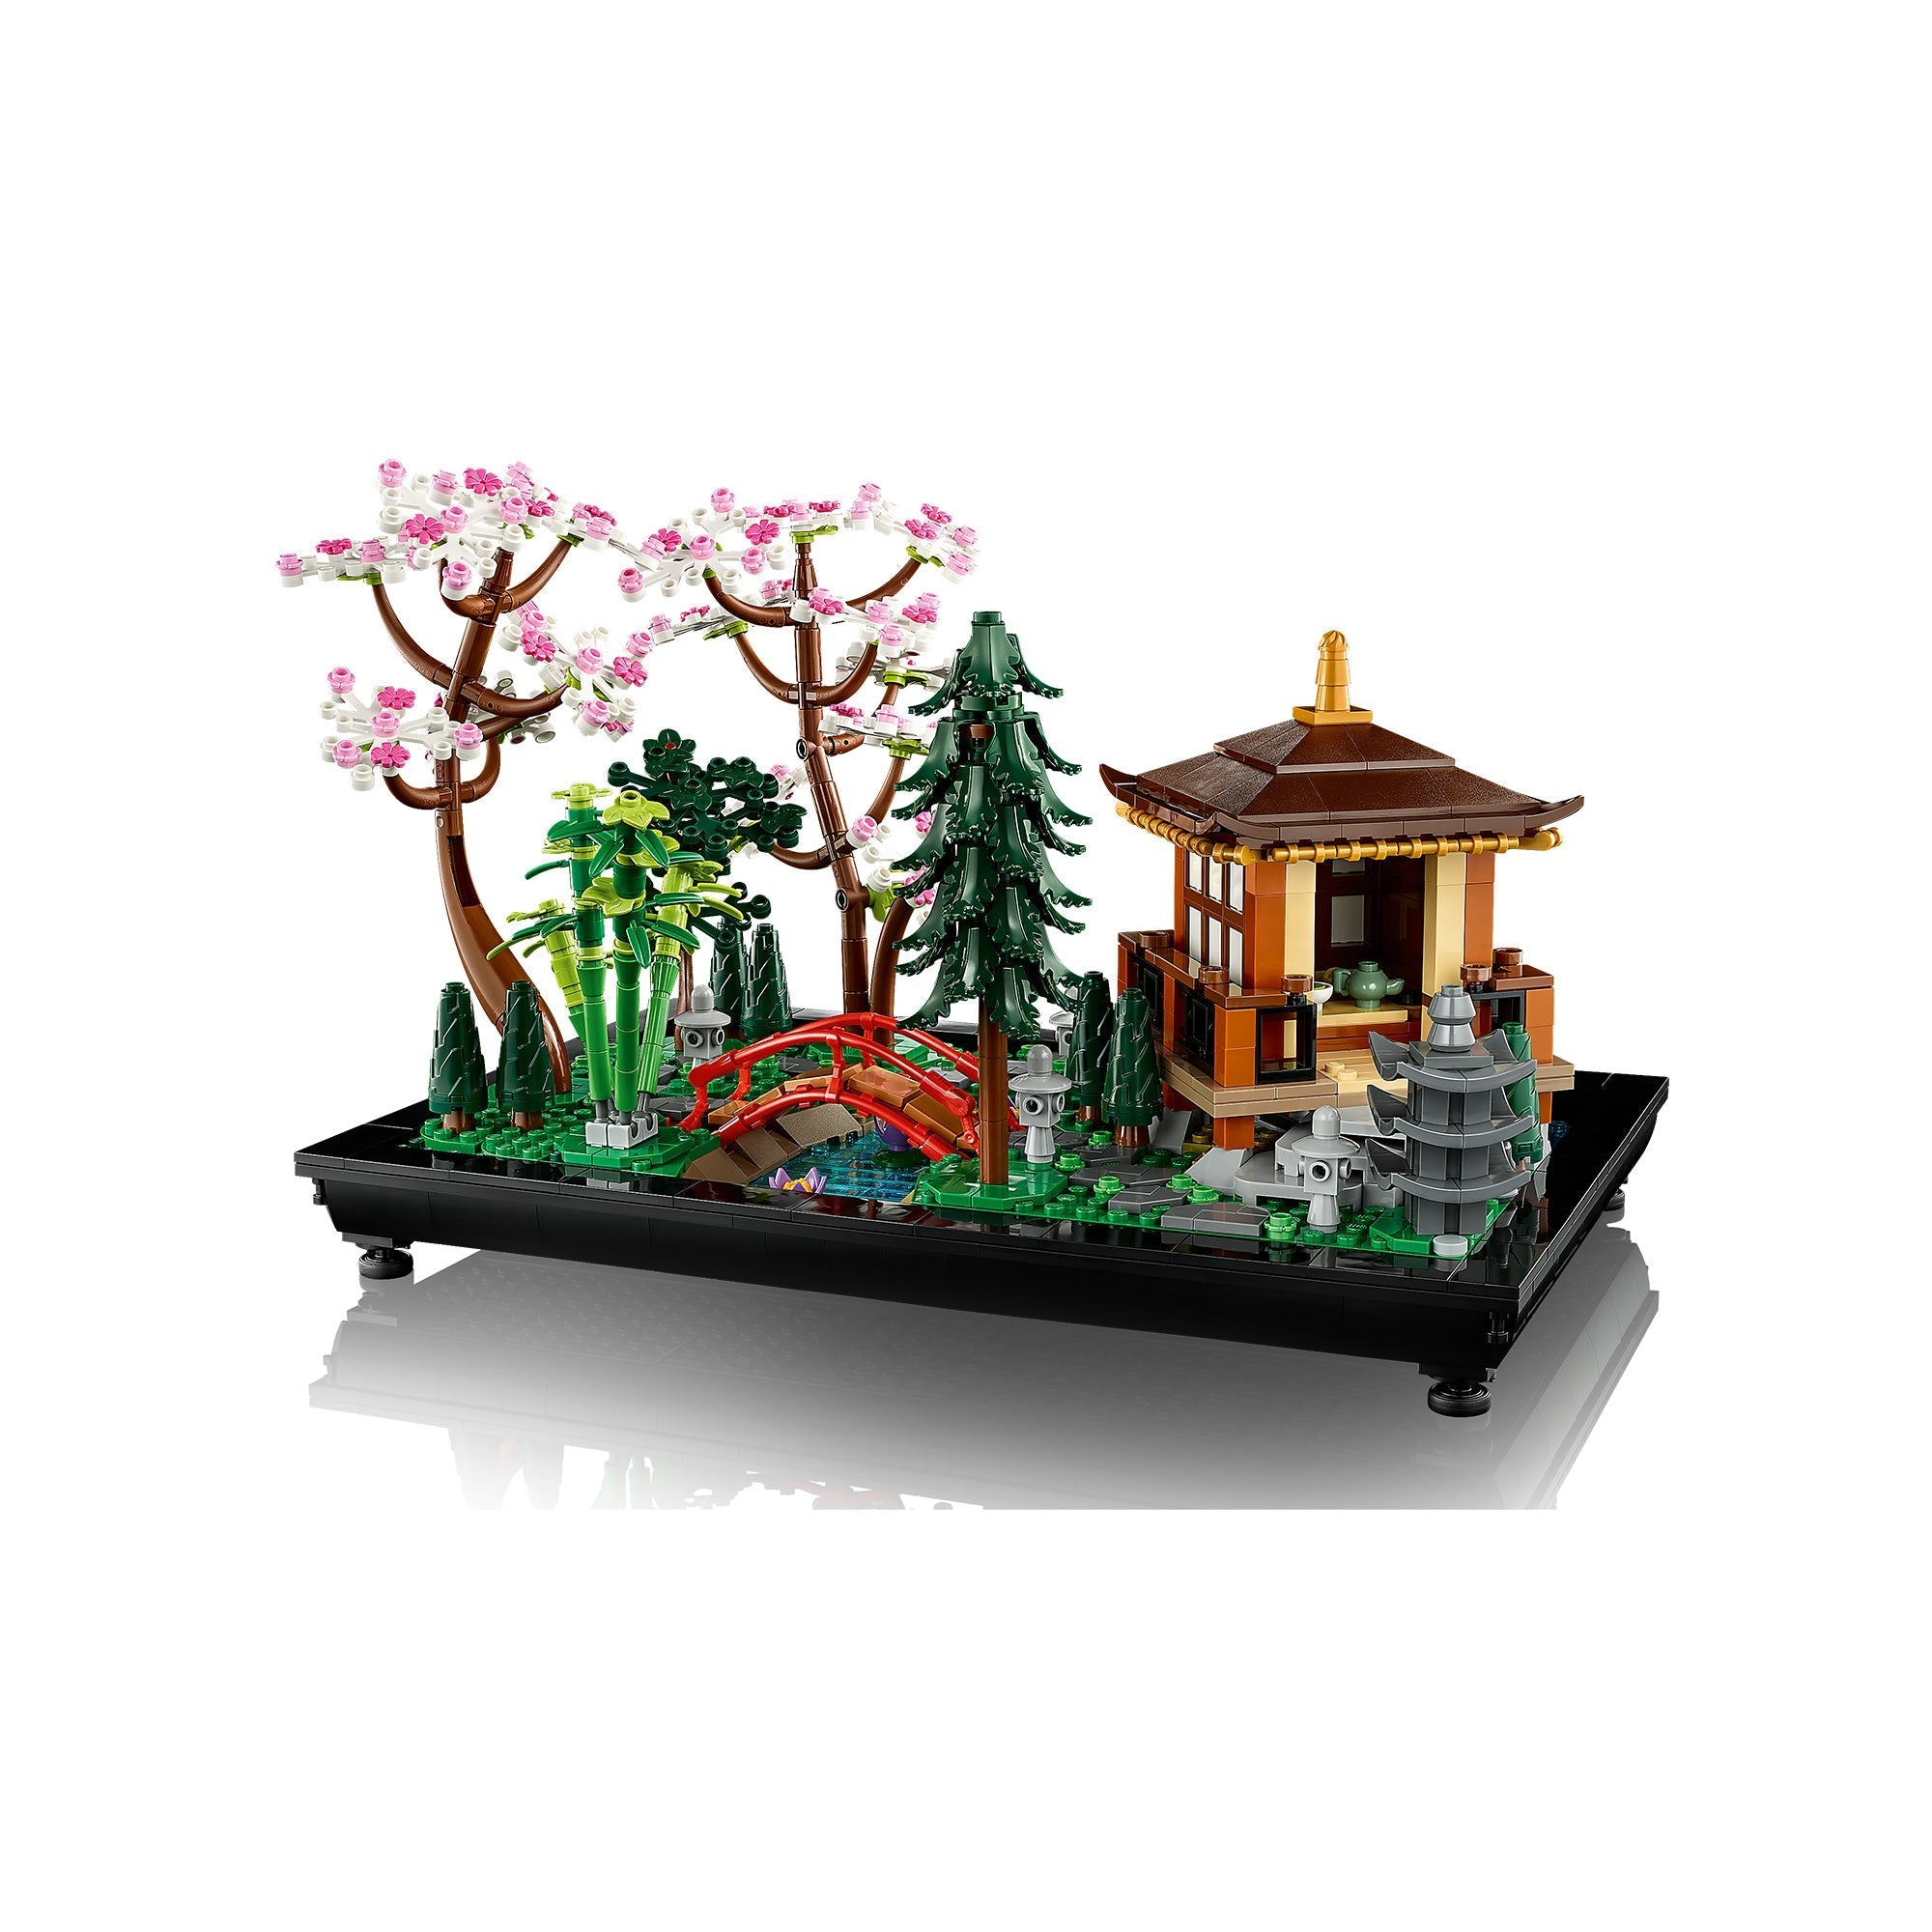 LEGO Icons Le jardin paisible, 10315, 1363 pièces